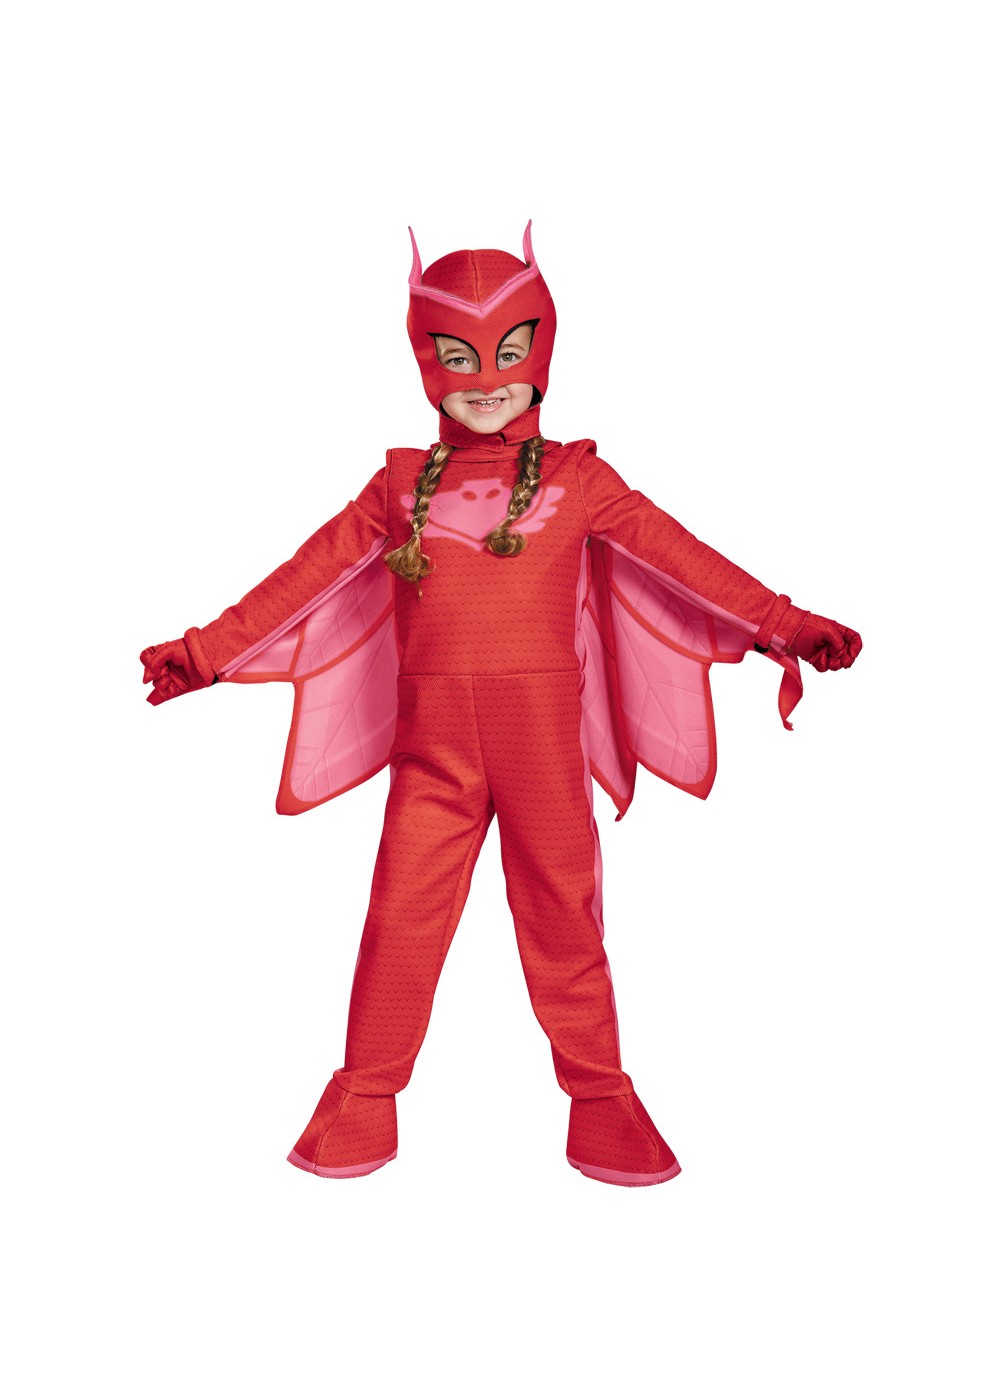 Kids Pj Masks Owlette Deluxe Costume